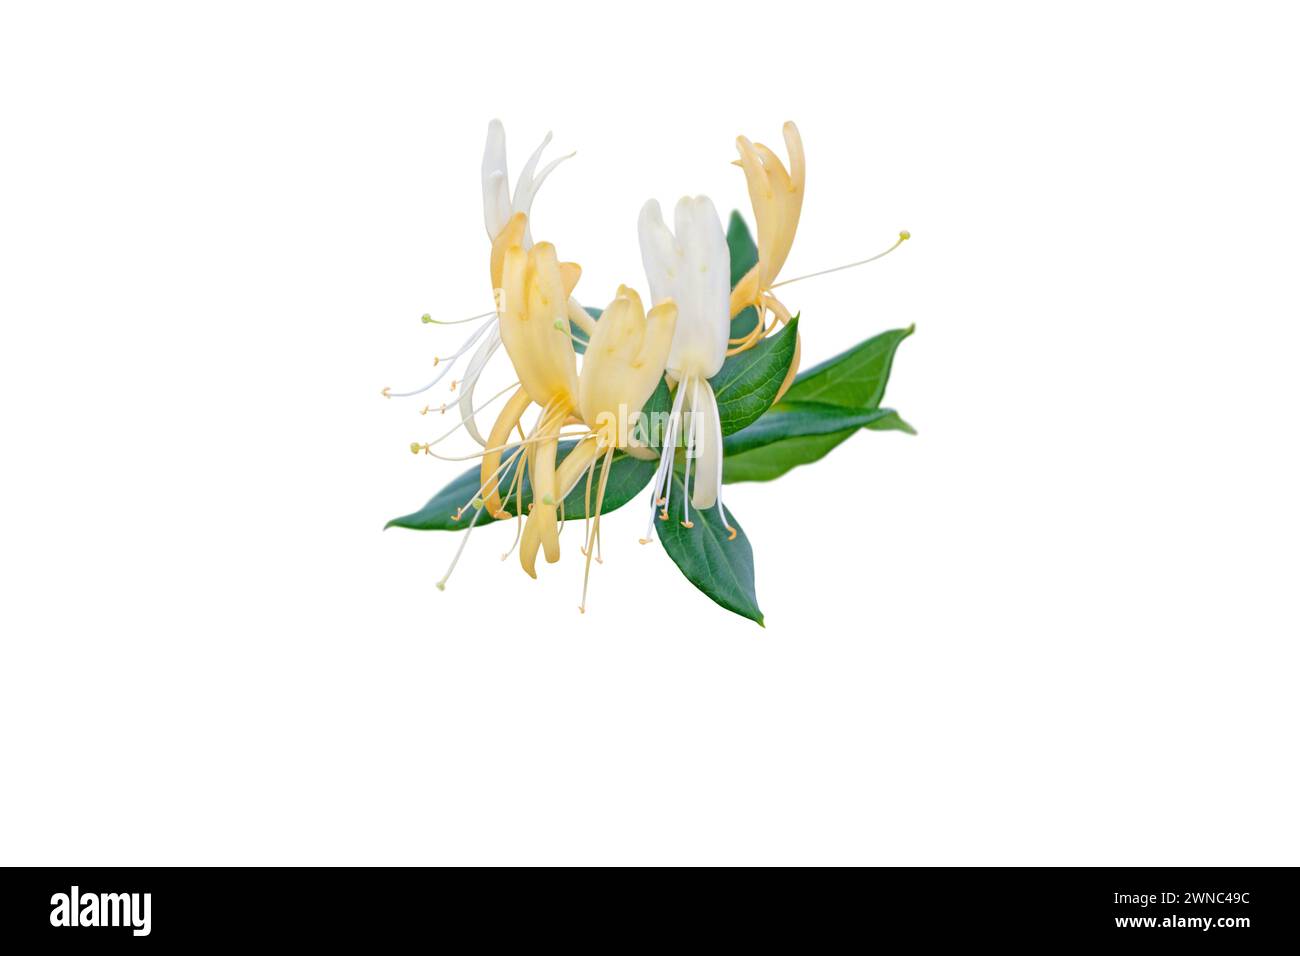 Geißblatt oder Lonicera japonica blühender Zweig isoliert auf weiß. Weiße und gelbe röhrenförmige, duftende Lonicera-Blüten. Stockfoto